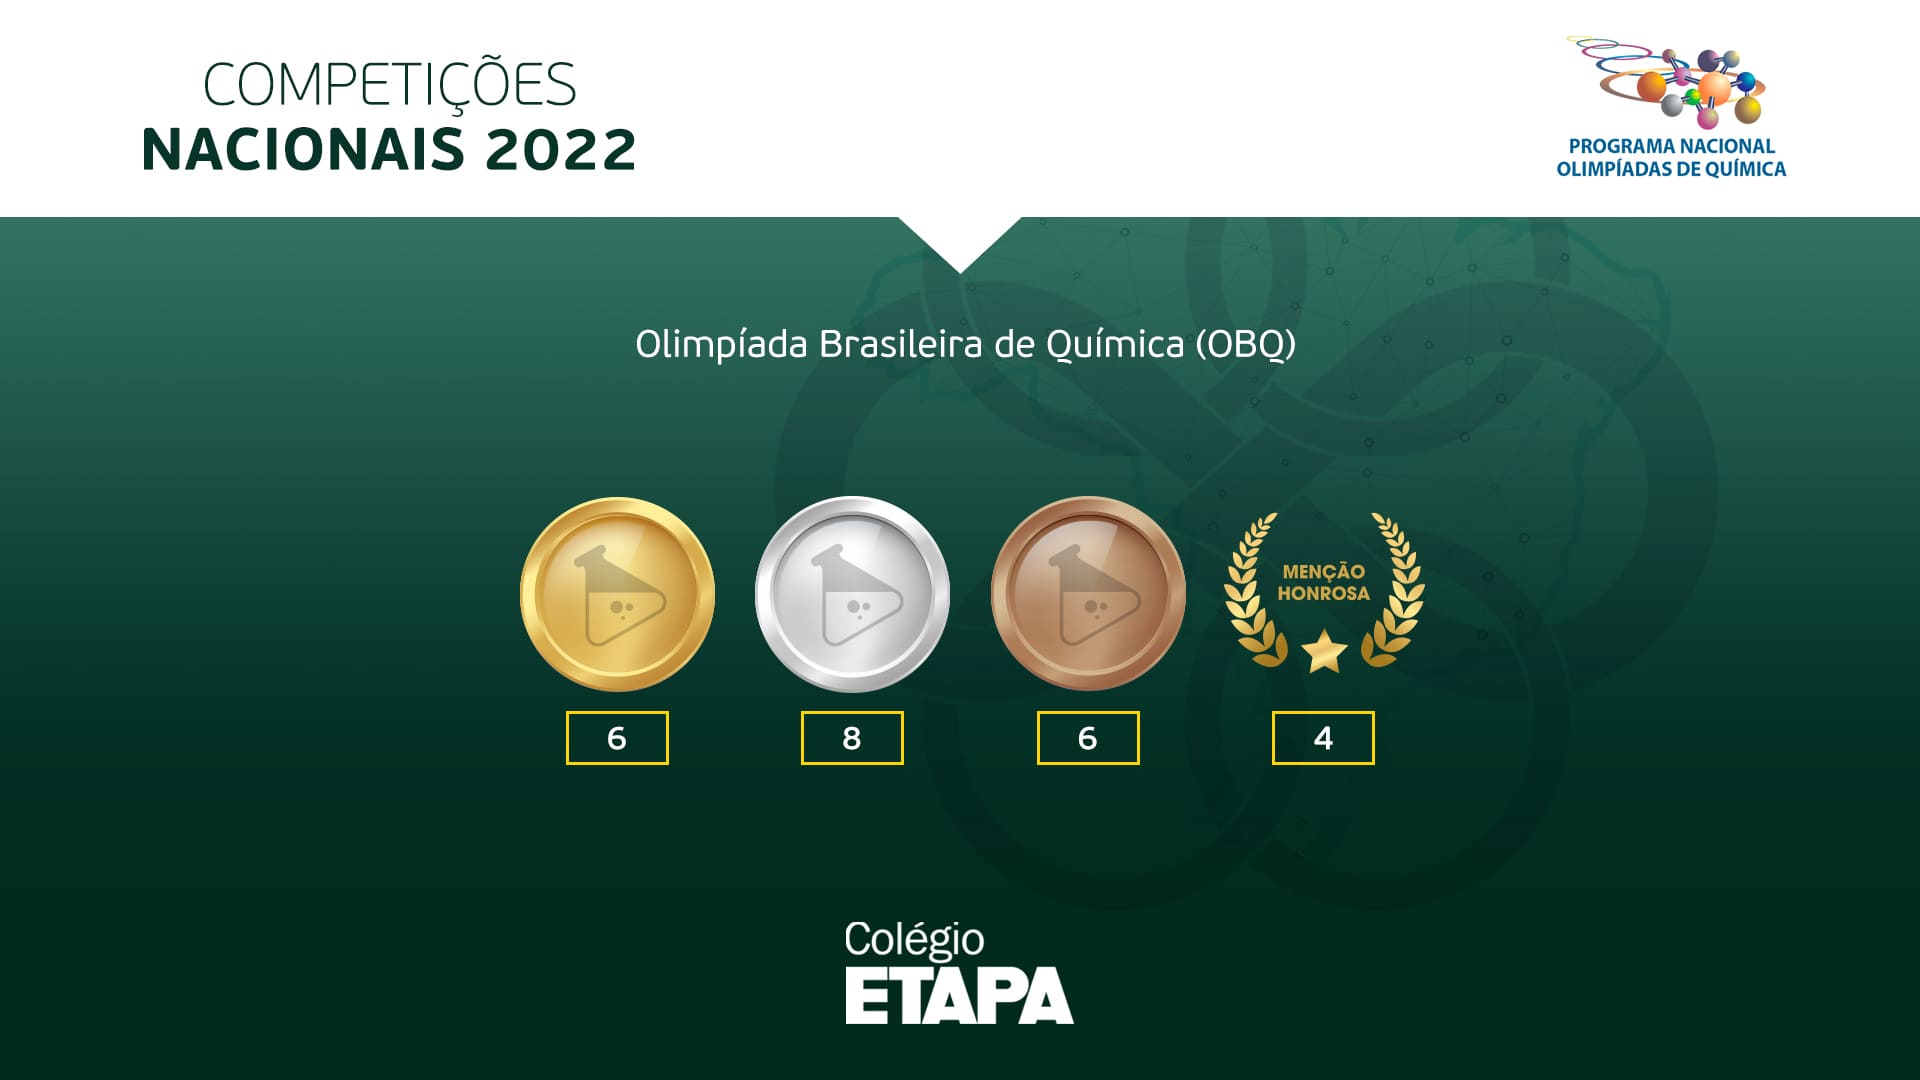 Os medalhistas da modalidade A da OBQ 2022 se classificaram automaticamente para a etapa seletiva da IChO 2023.